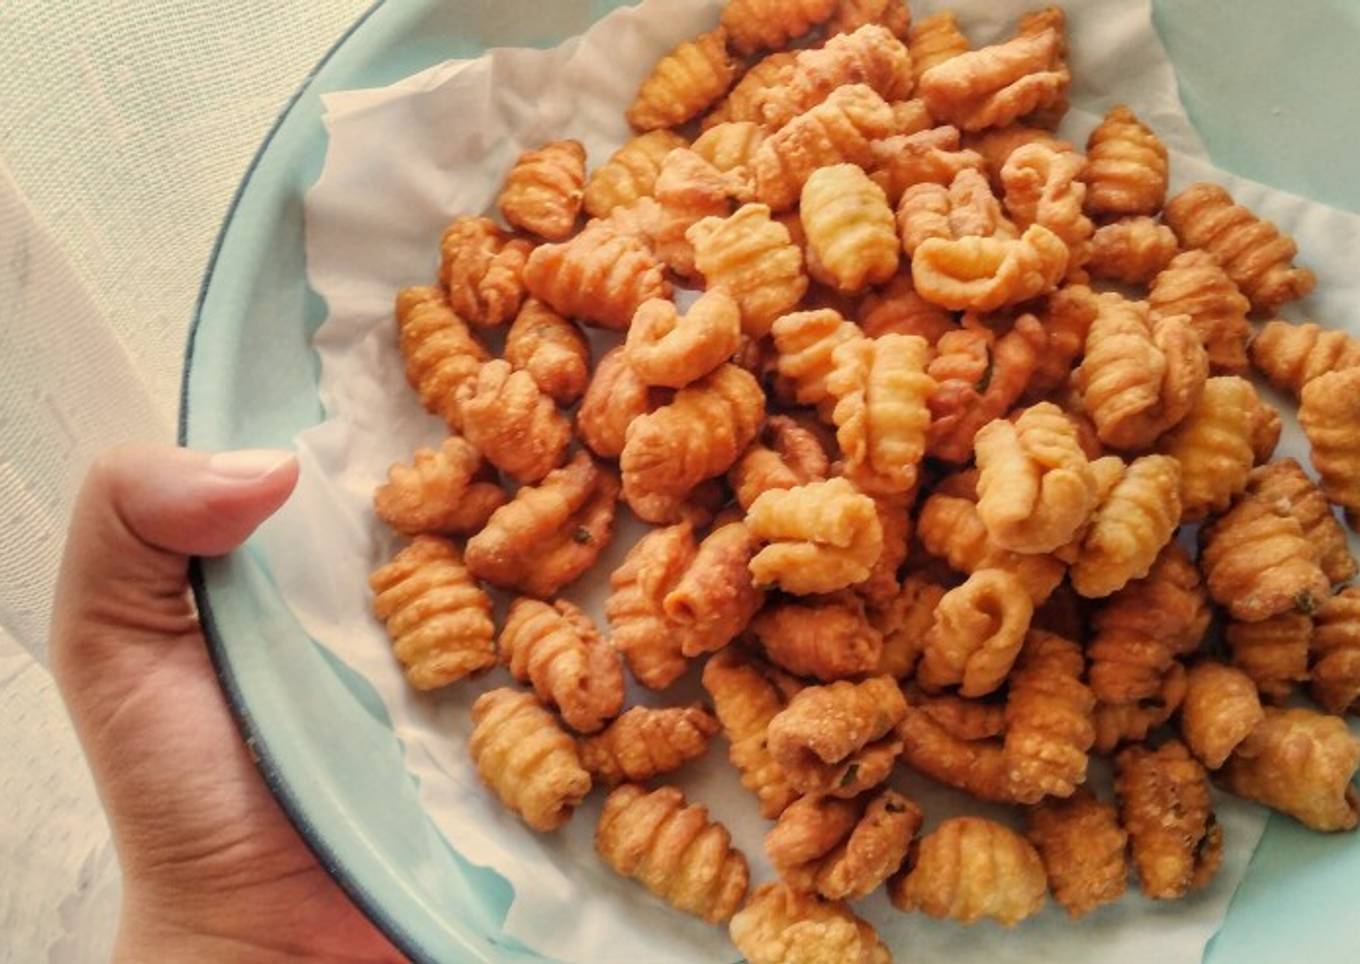 Kue Garpu / “Fork” Fried Cookies